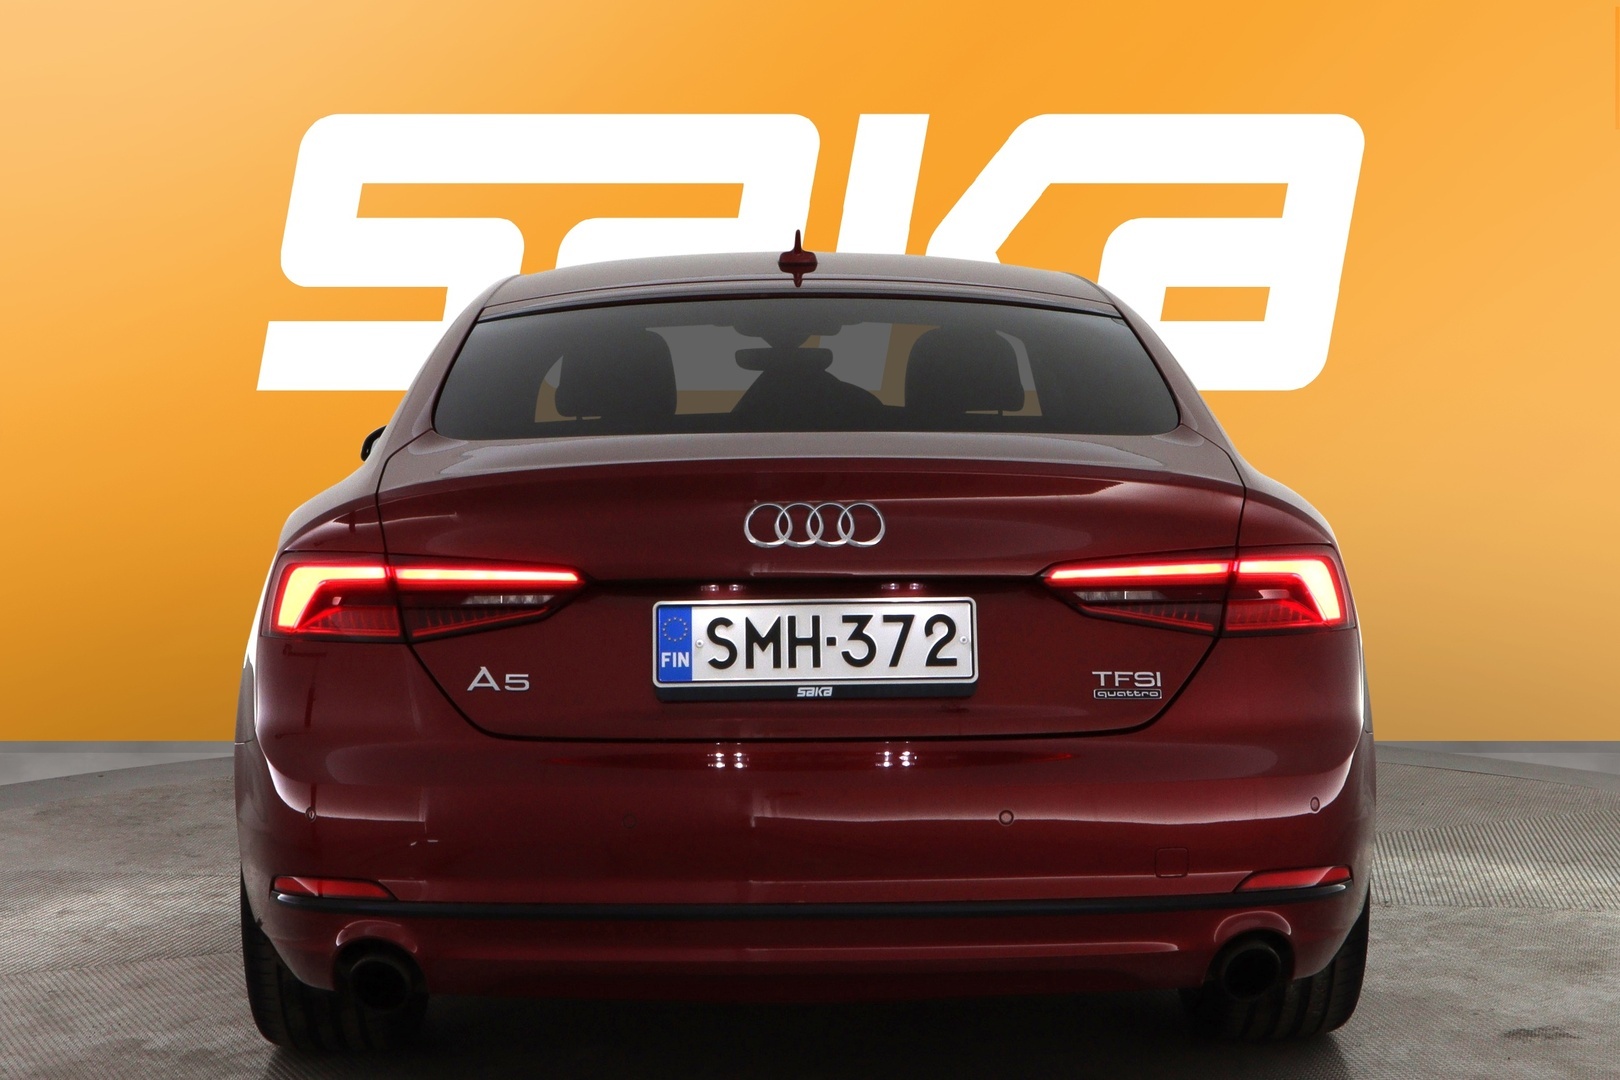 Punainen Viistoperä, Audi A5 – SMH-372